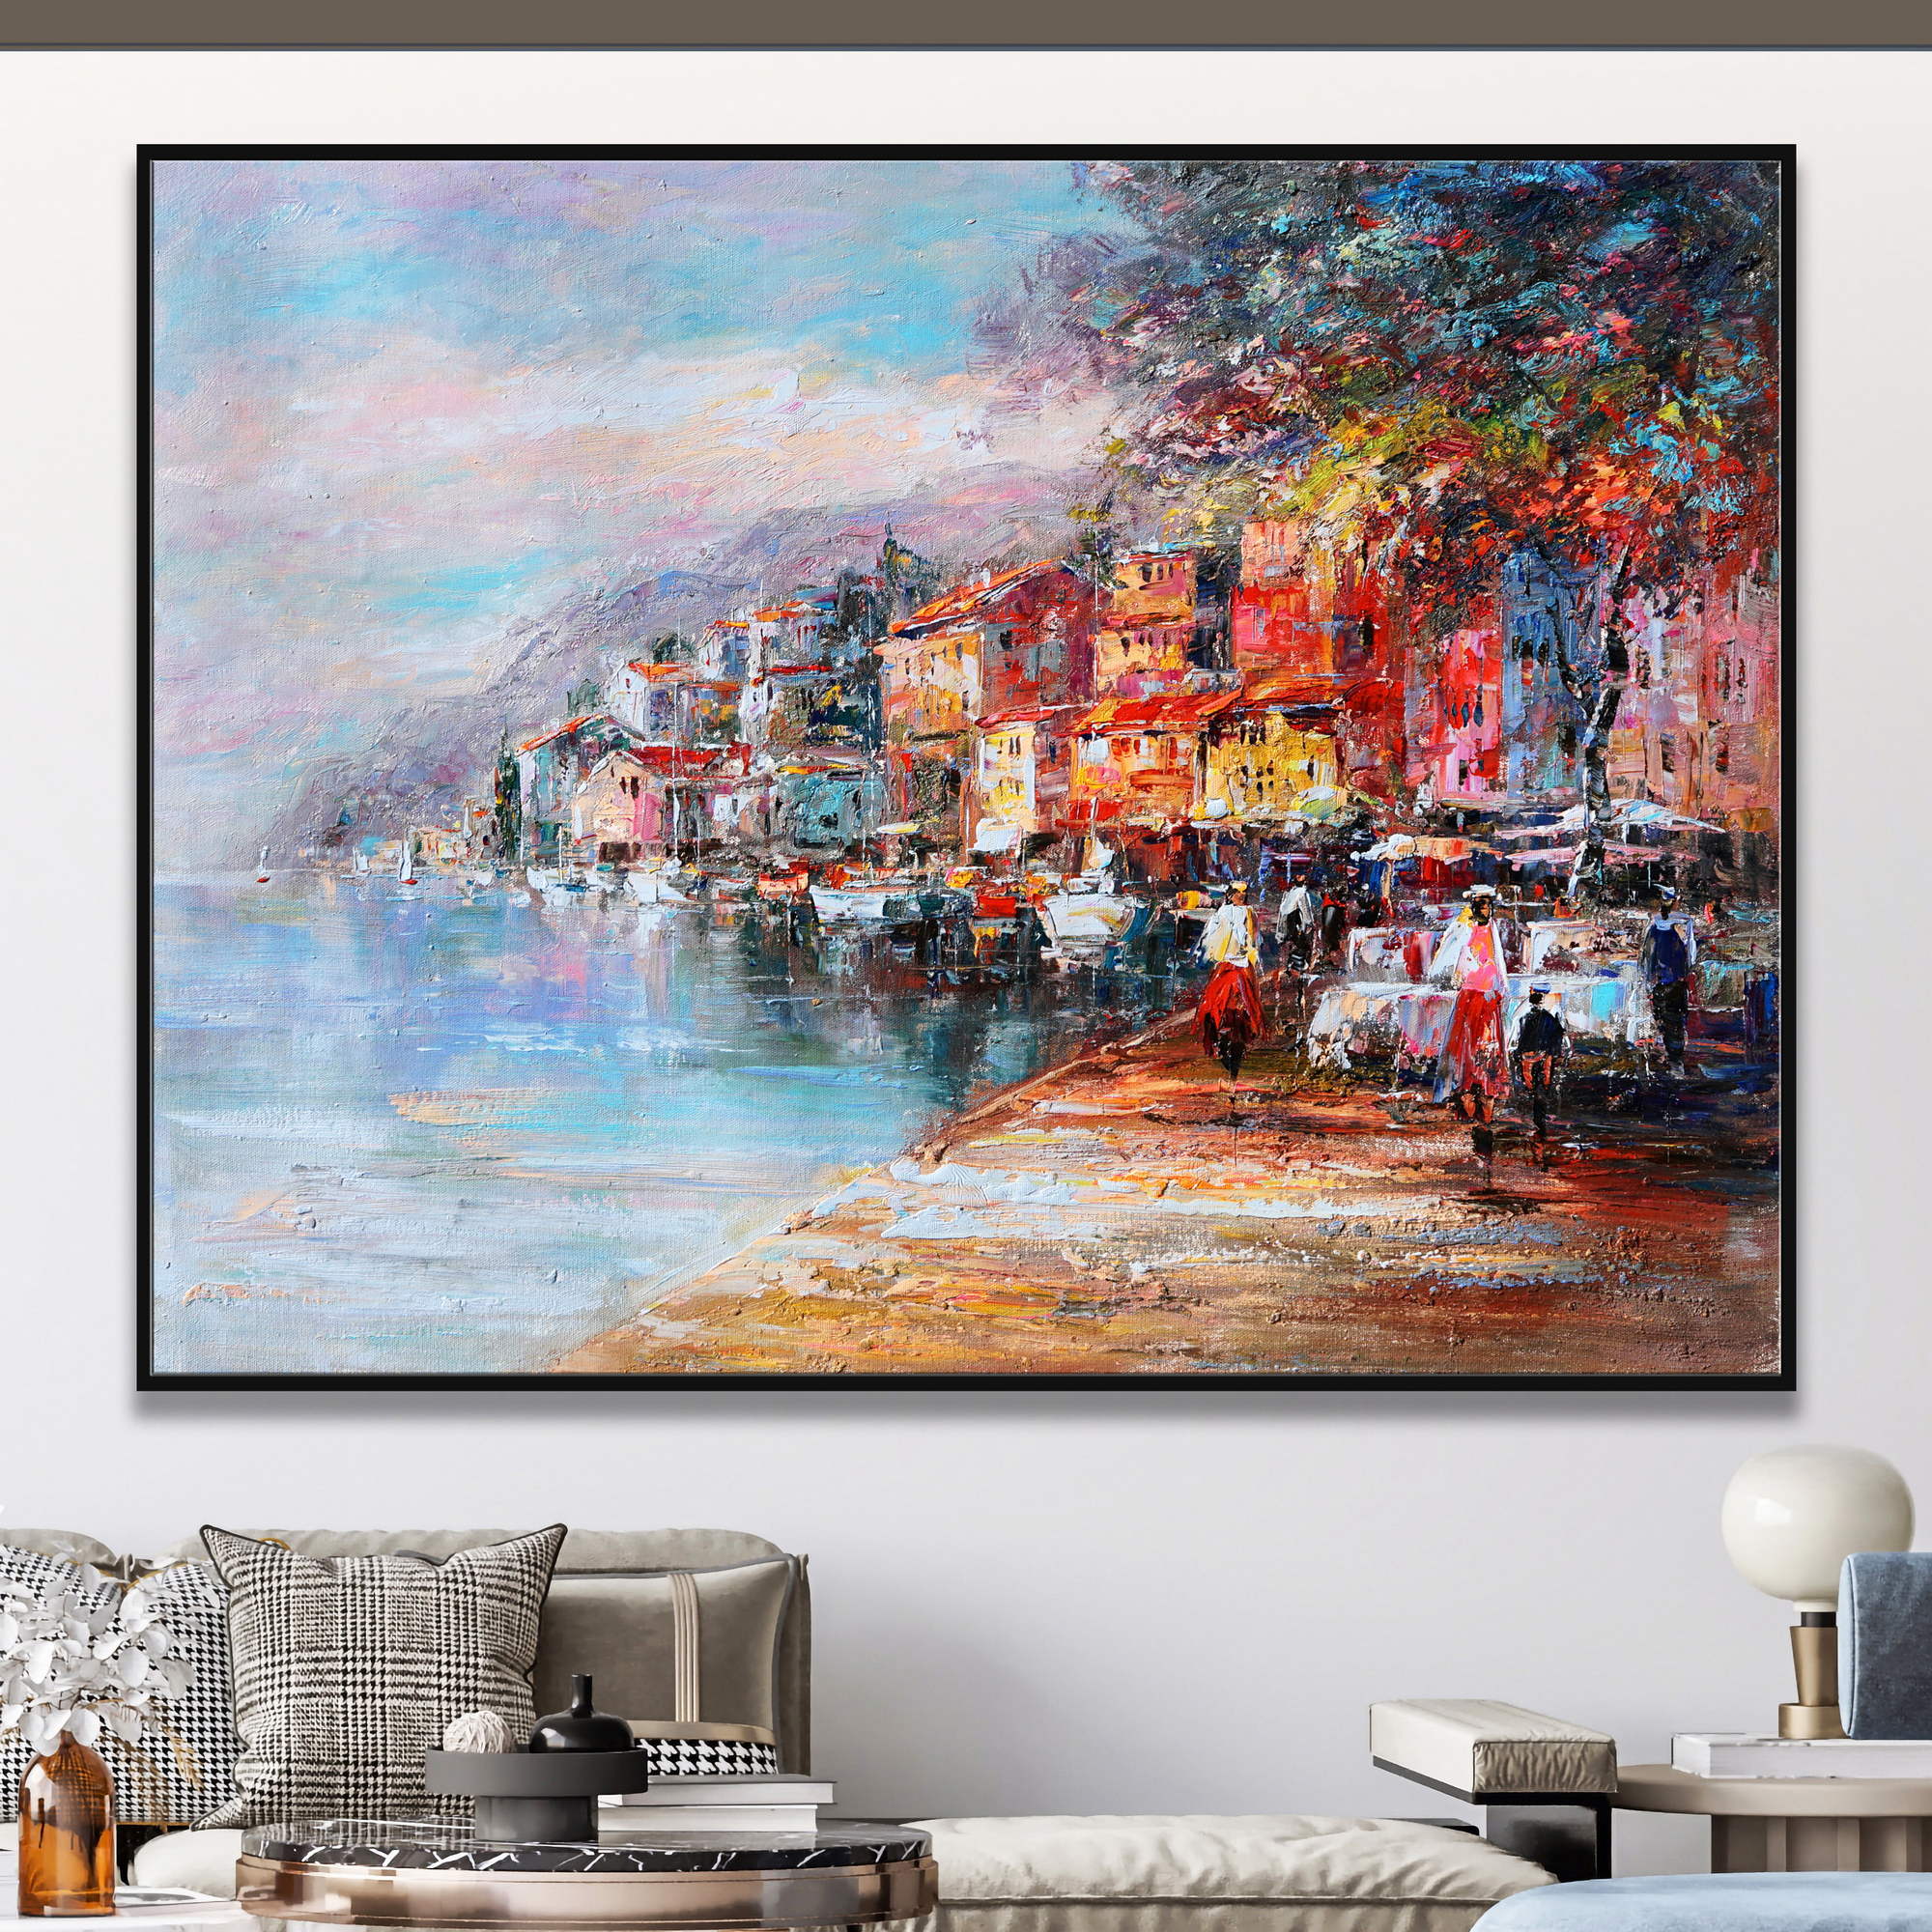 dipinto di un borgo pieno di colore sul lago di Garda